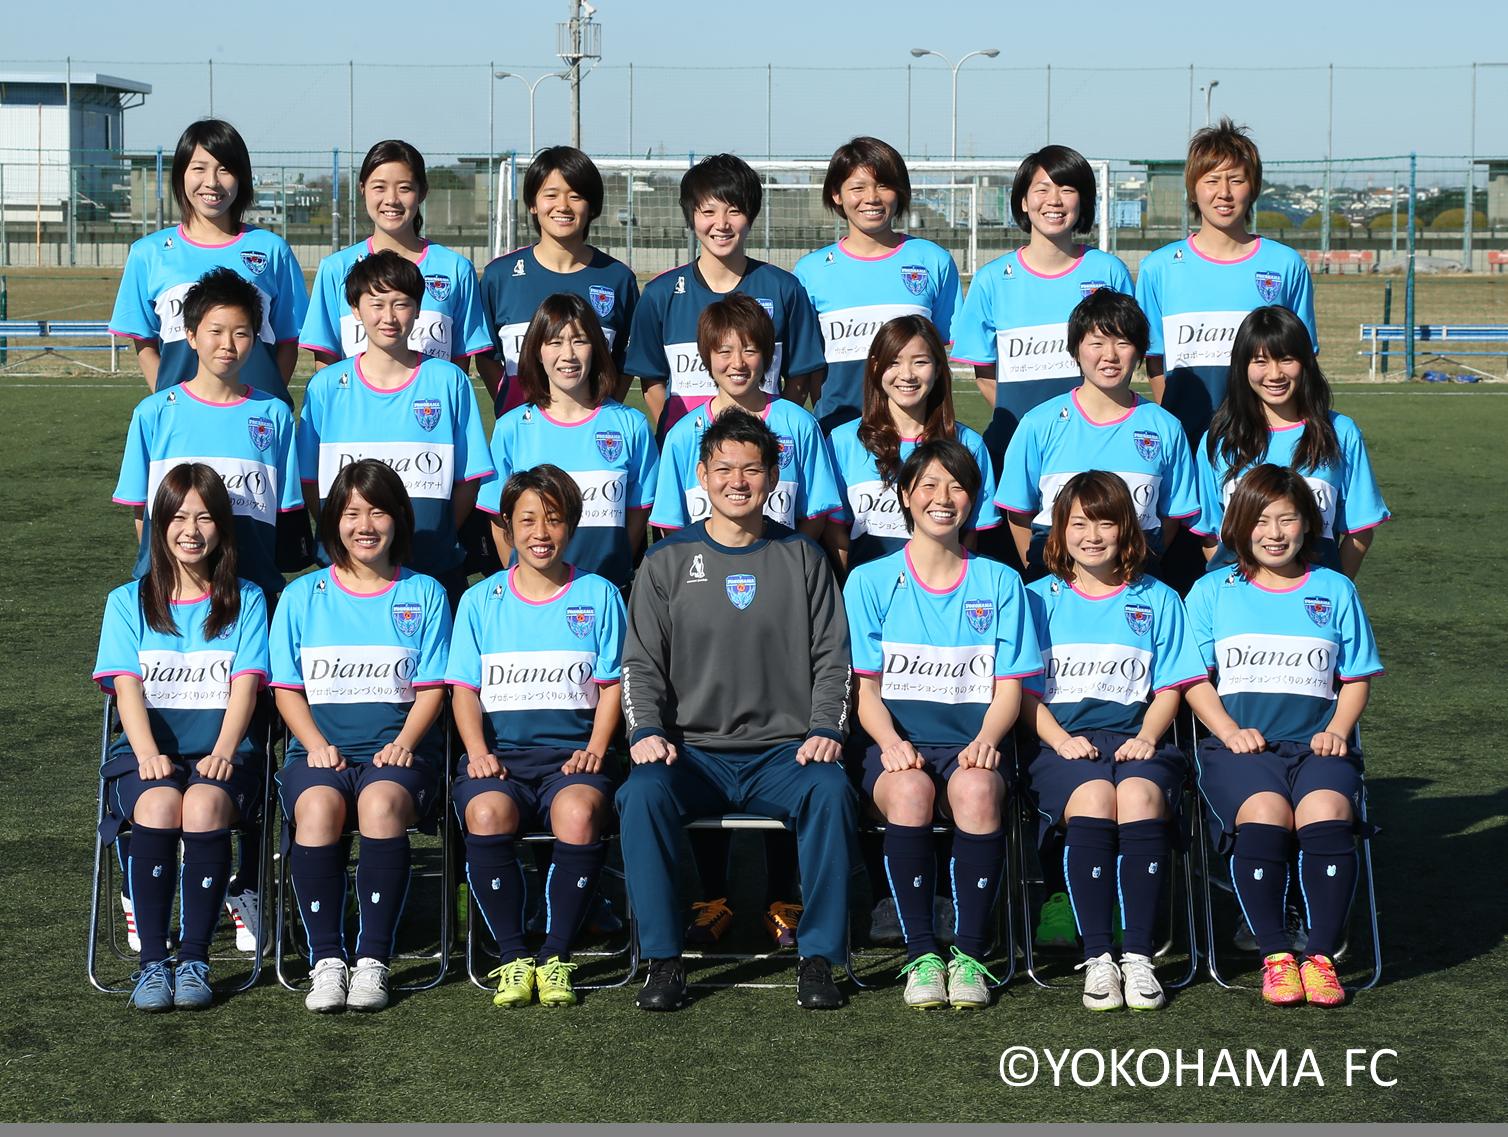 目指せなでしこリーグ入り 横浜ｆｃシーガルズ オフィシャルクラブトップパートナー契約更新 ダイアナのプレスリリース